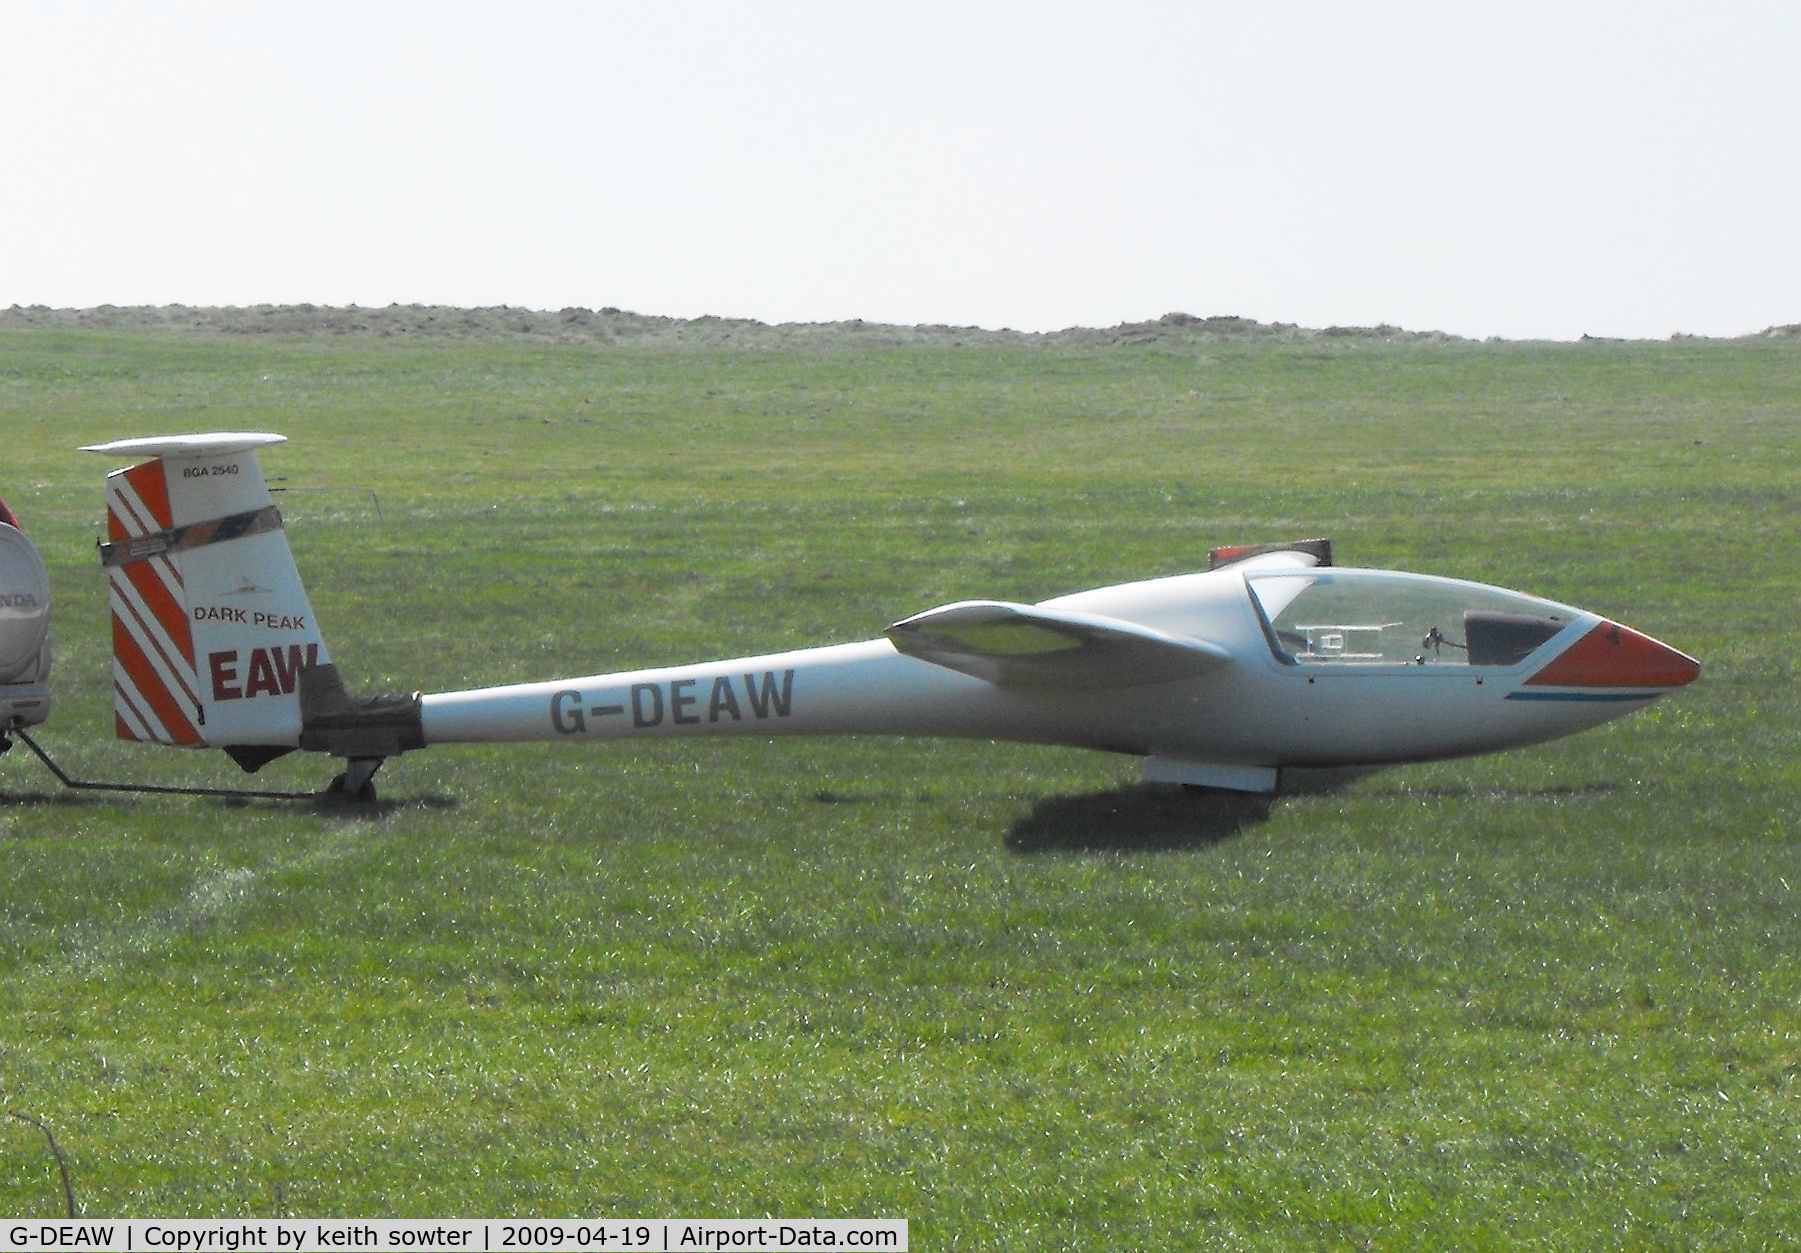 G-DEAW, 1979 Grob G-102 Astir CS77 C/N 1831, Based glider at Camphill Farm, Derbyshire